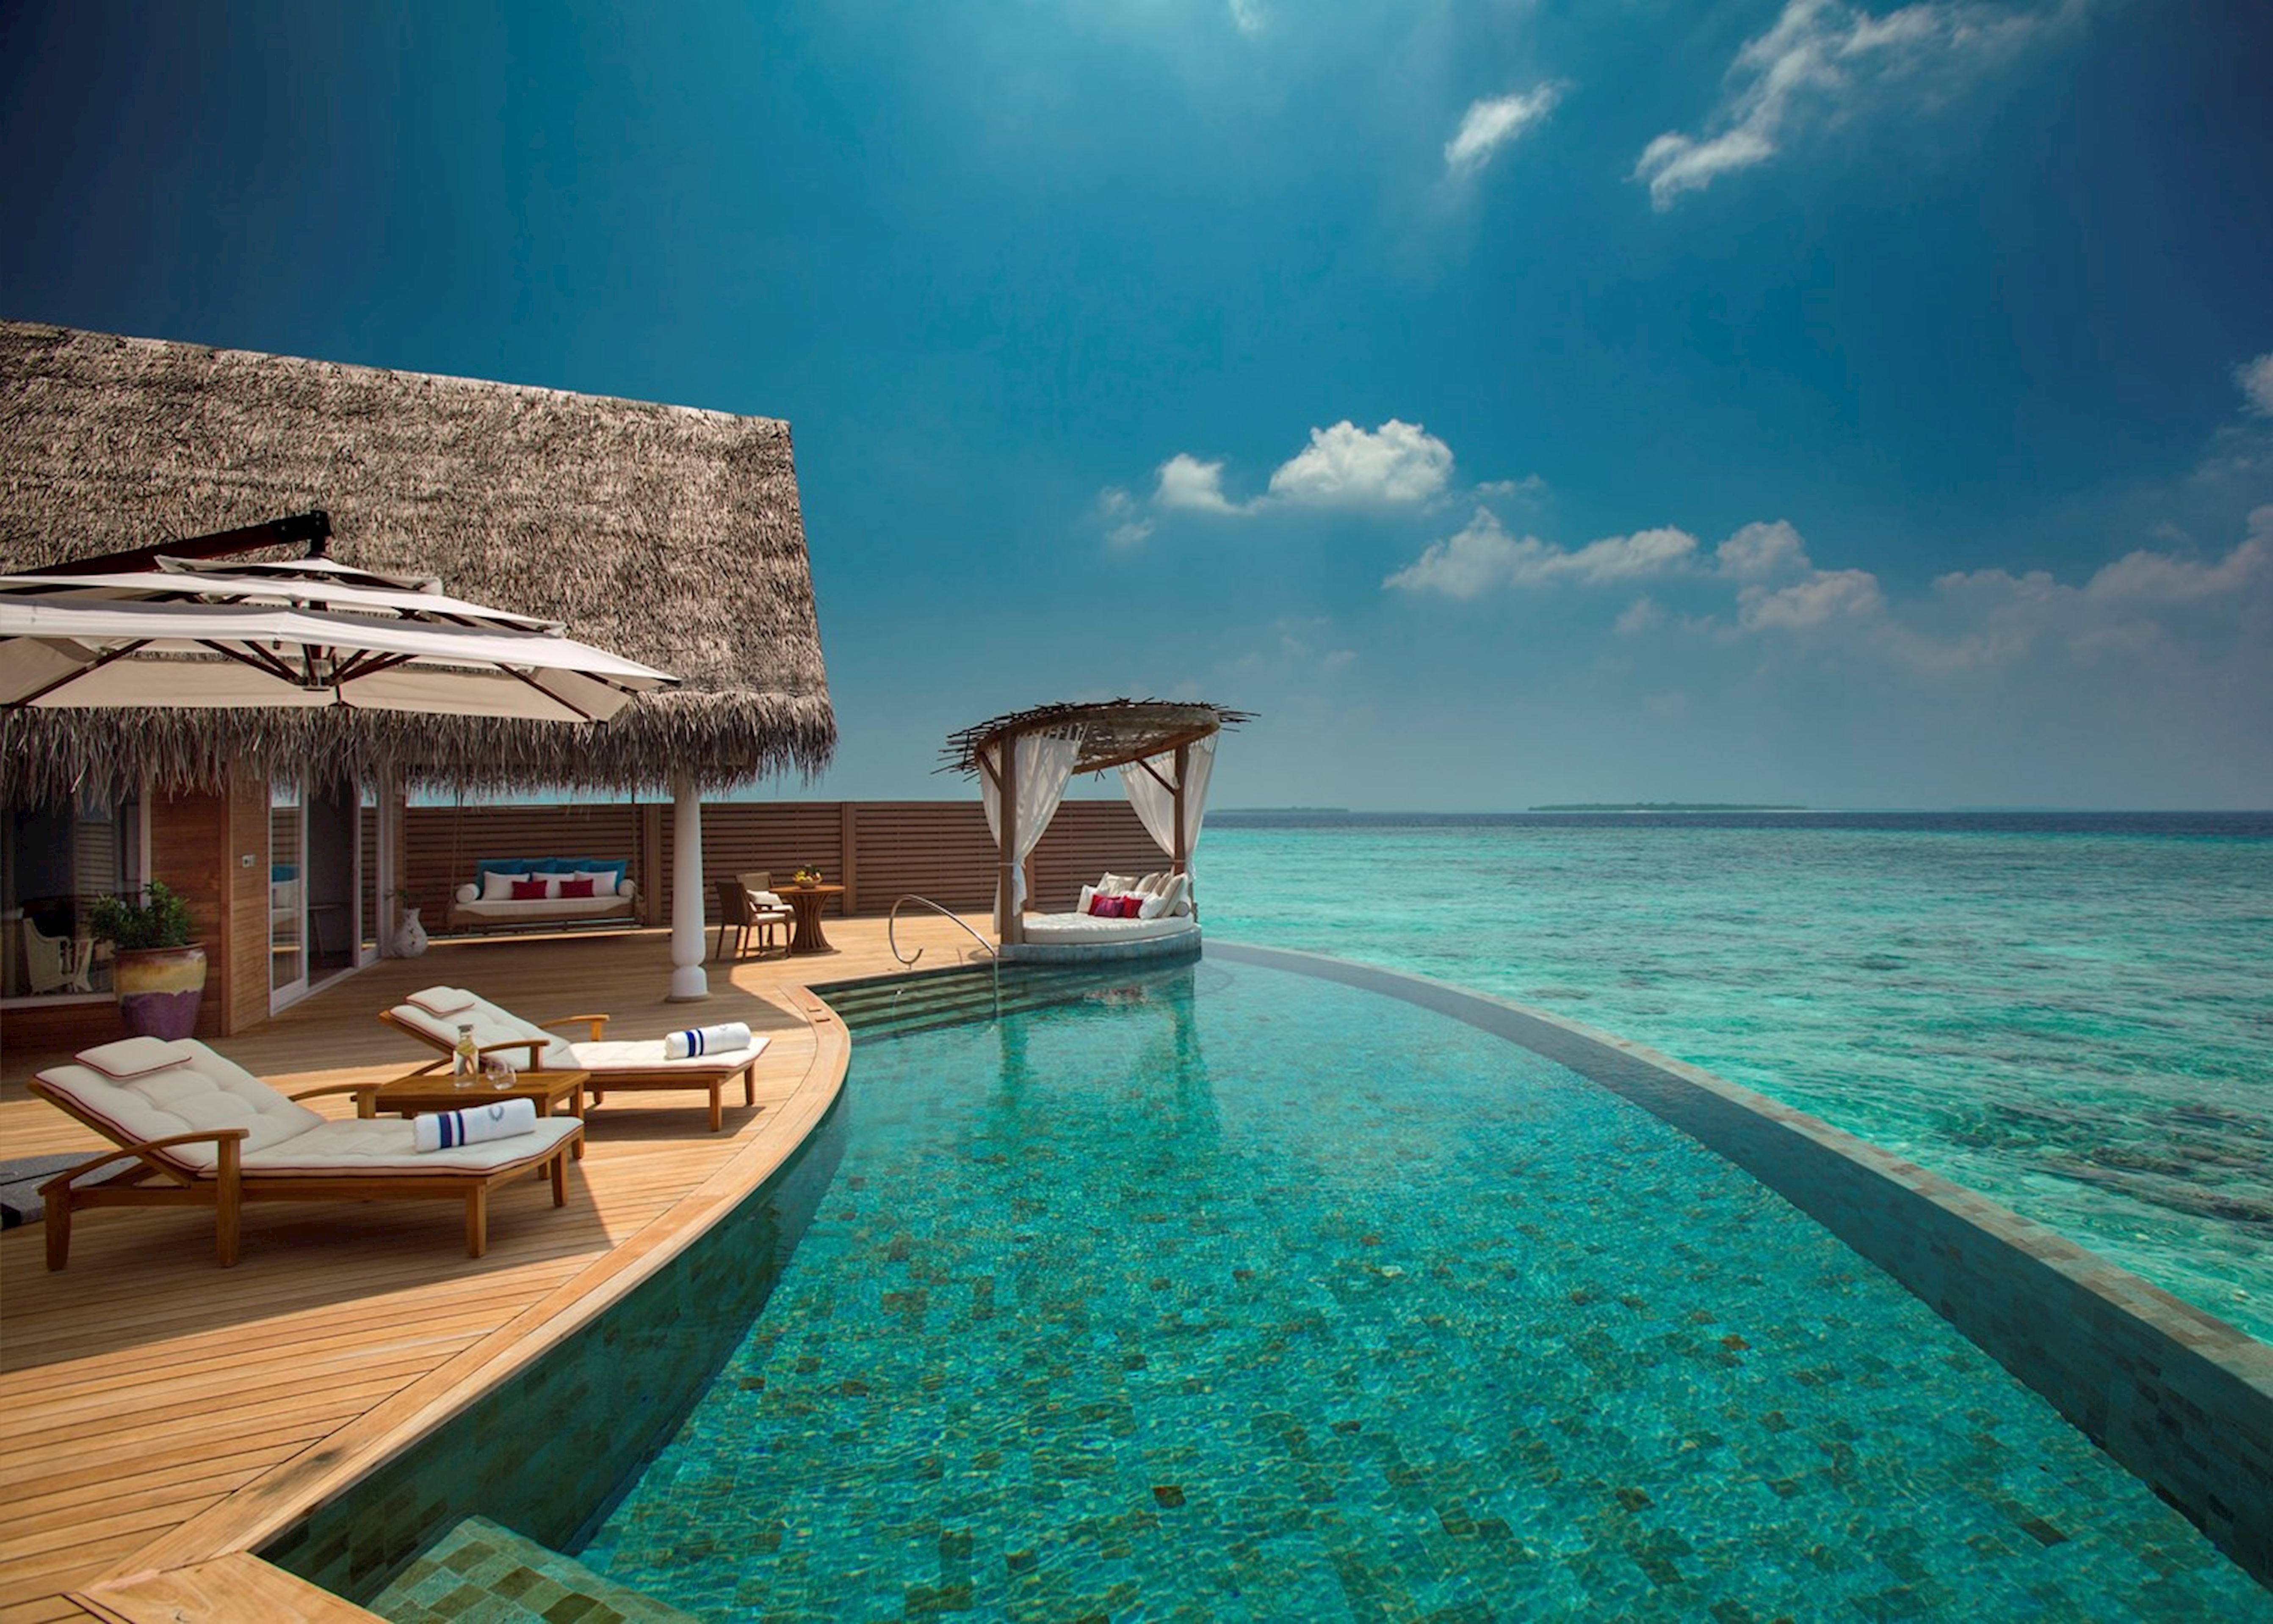 maldives travel advice uk